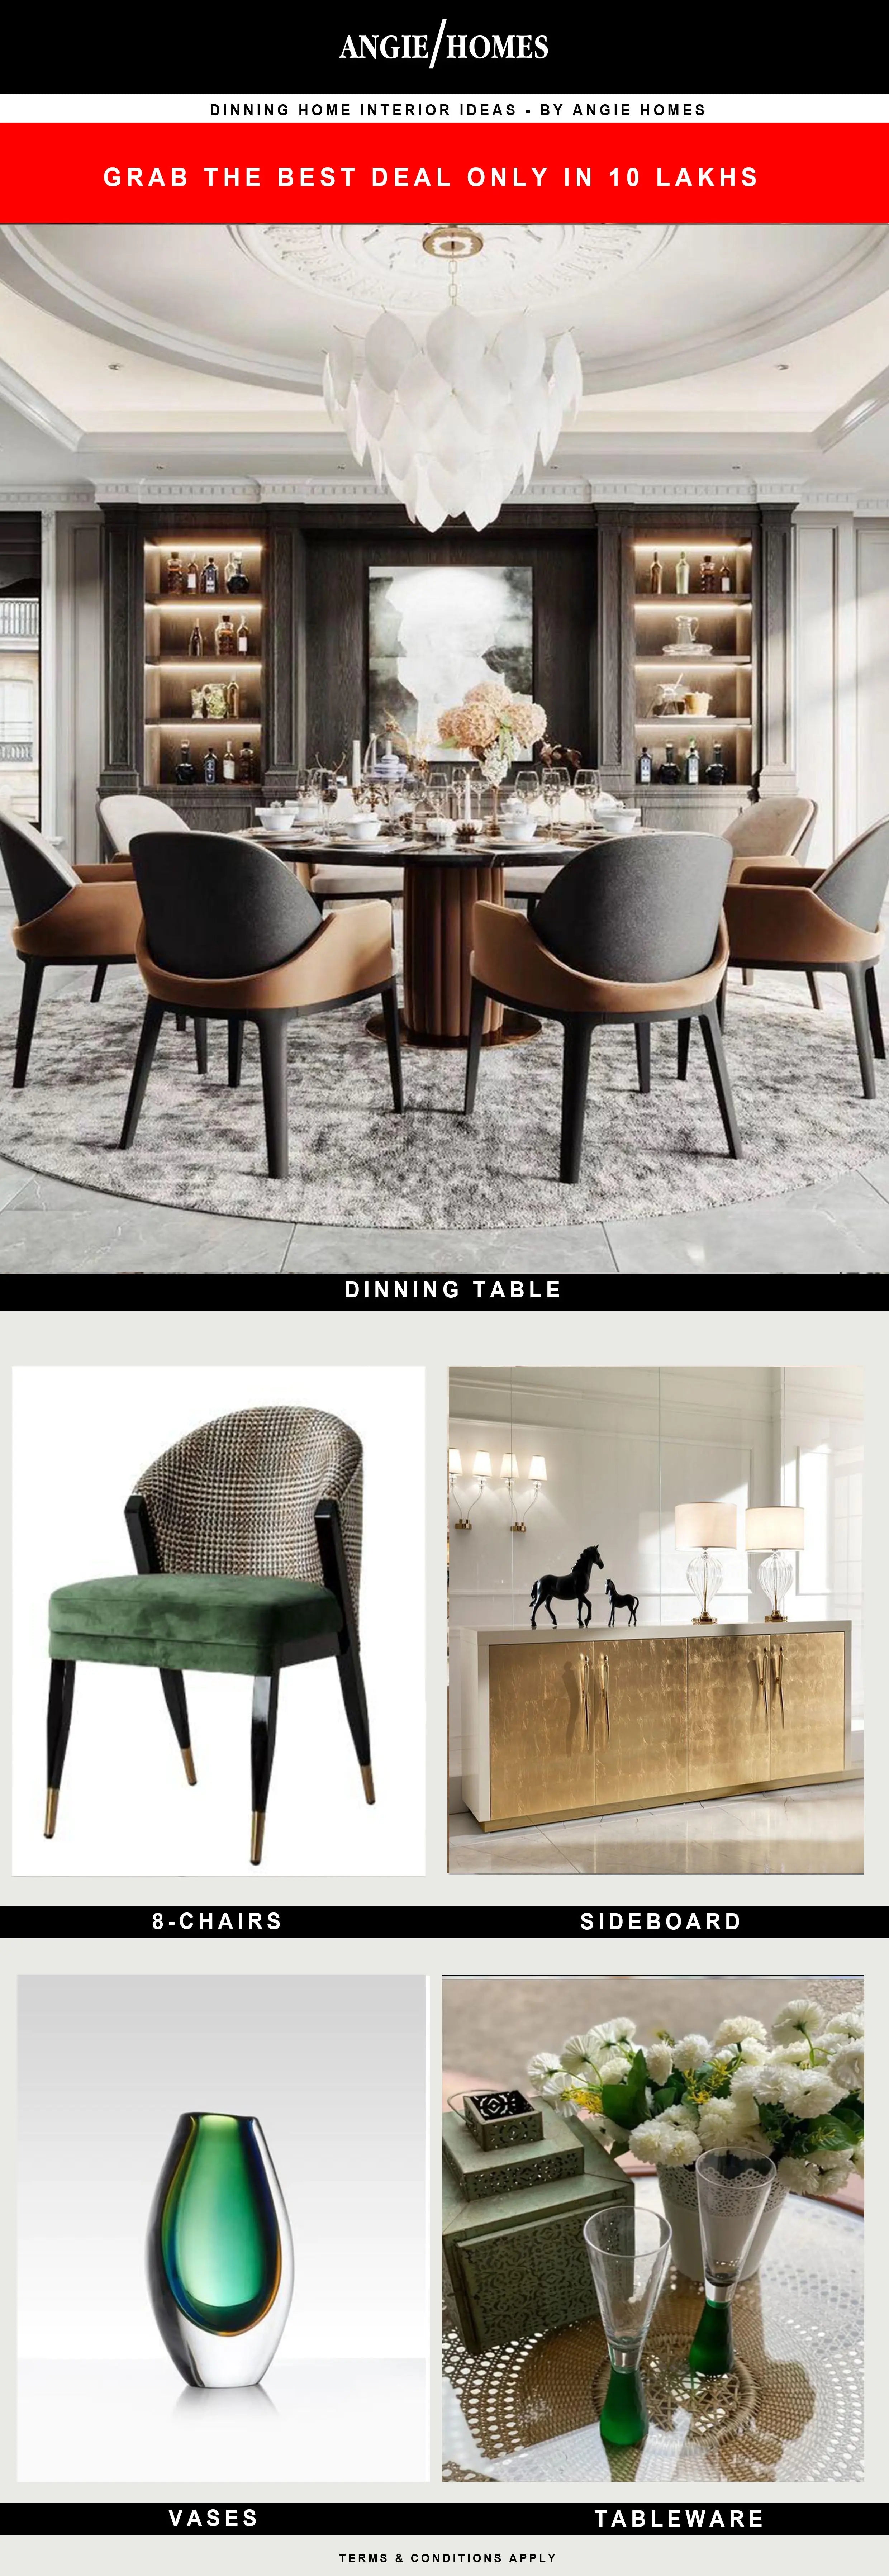 Kara Dining Room Interior Design & Decor